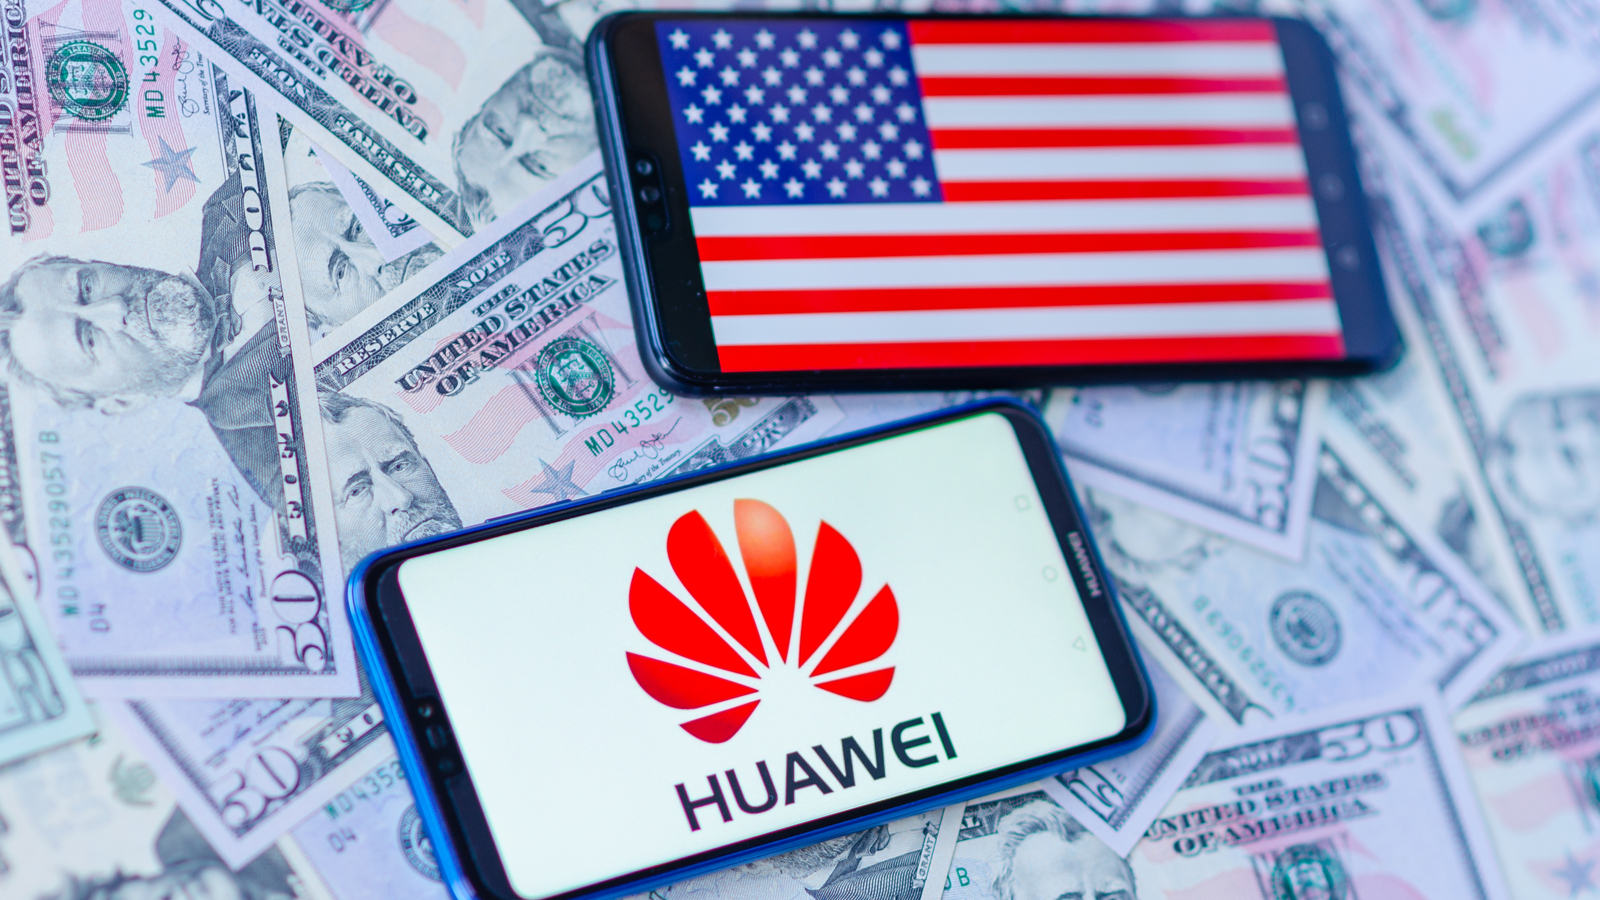 Les États-Unis ont trouvé un nouveau moyen d'atteindre Huawei